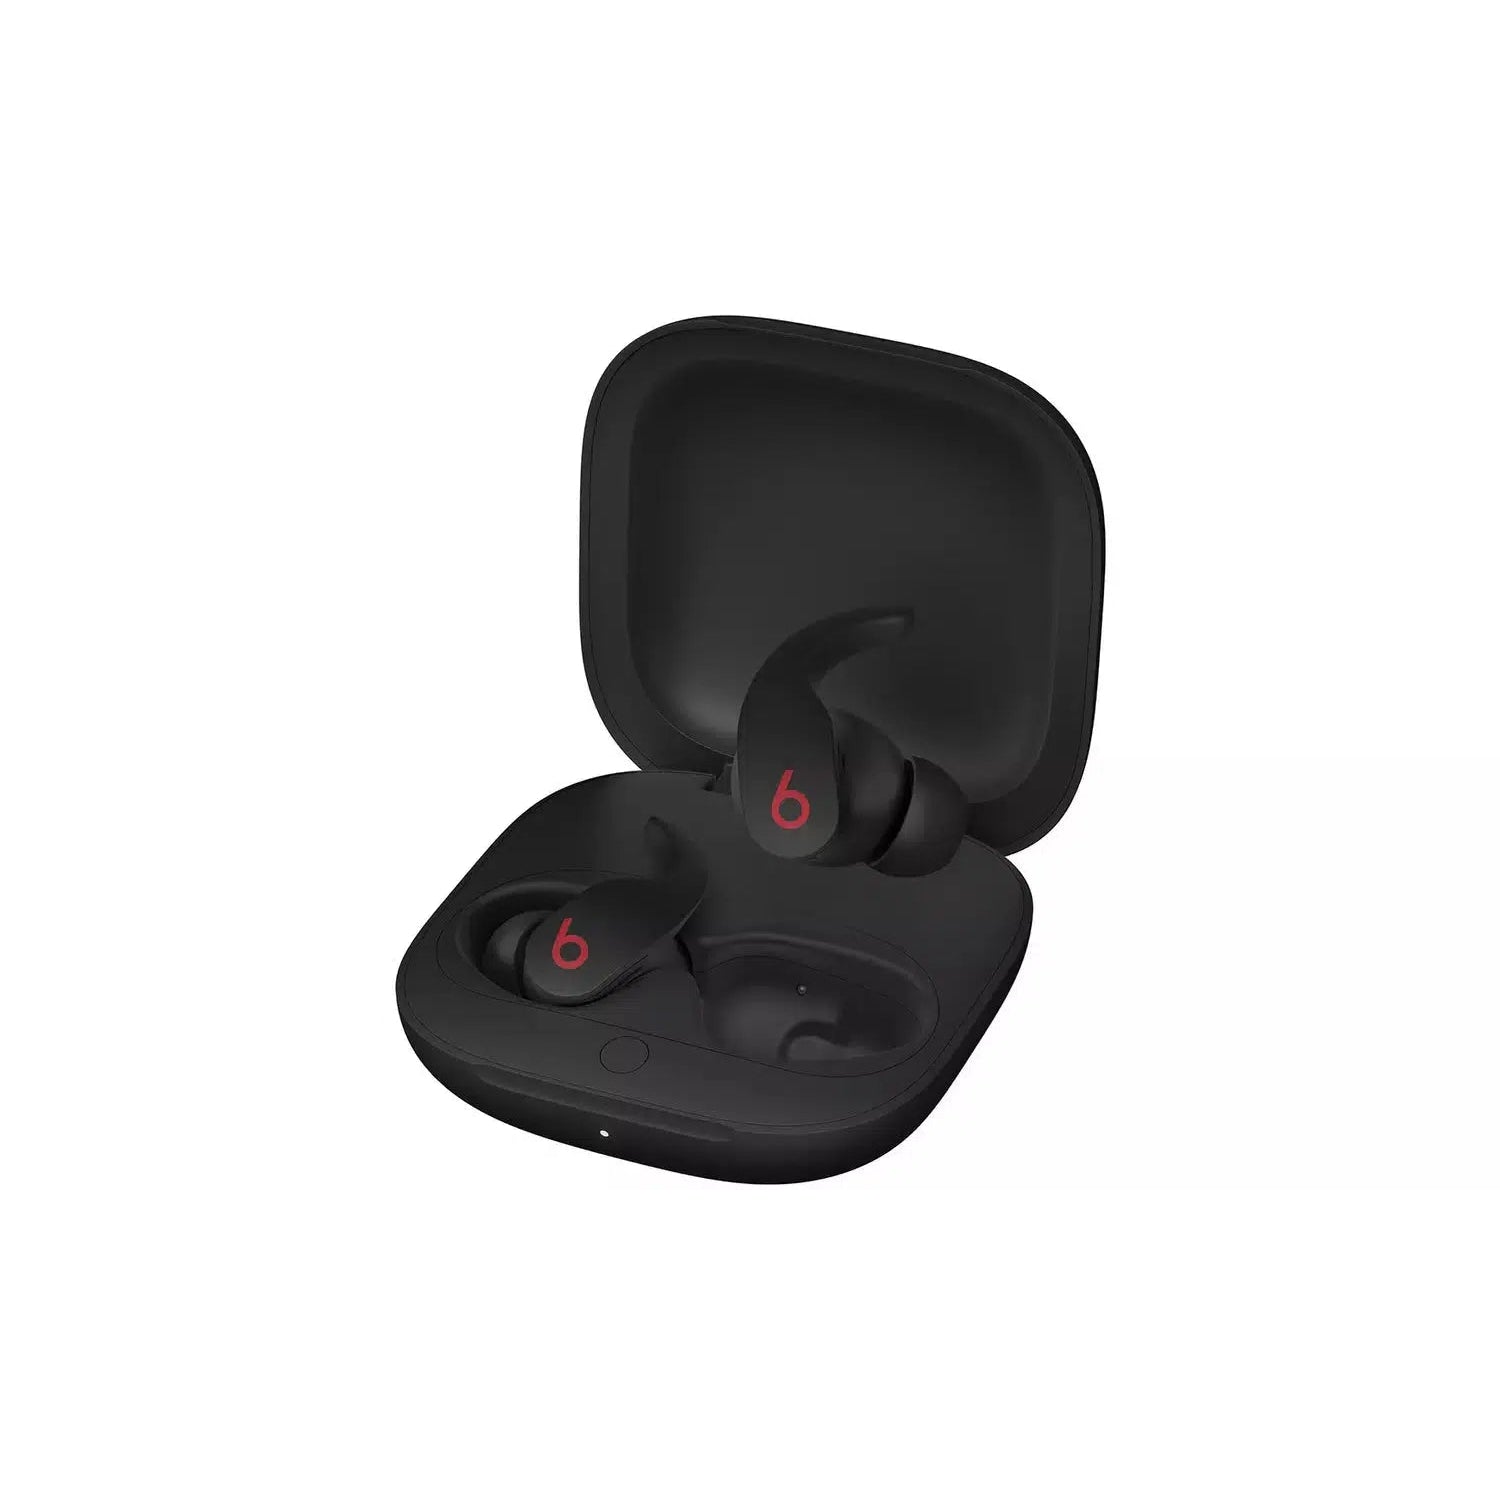 Beats Fit Pro True Wireless In-Ear Earbuds - Black - Refurbished Good